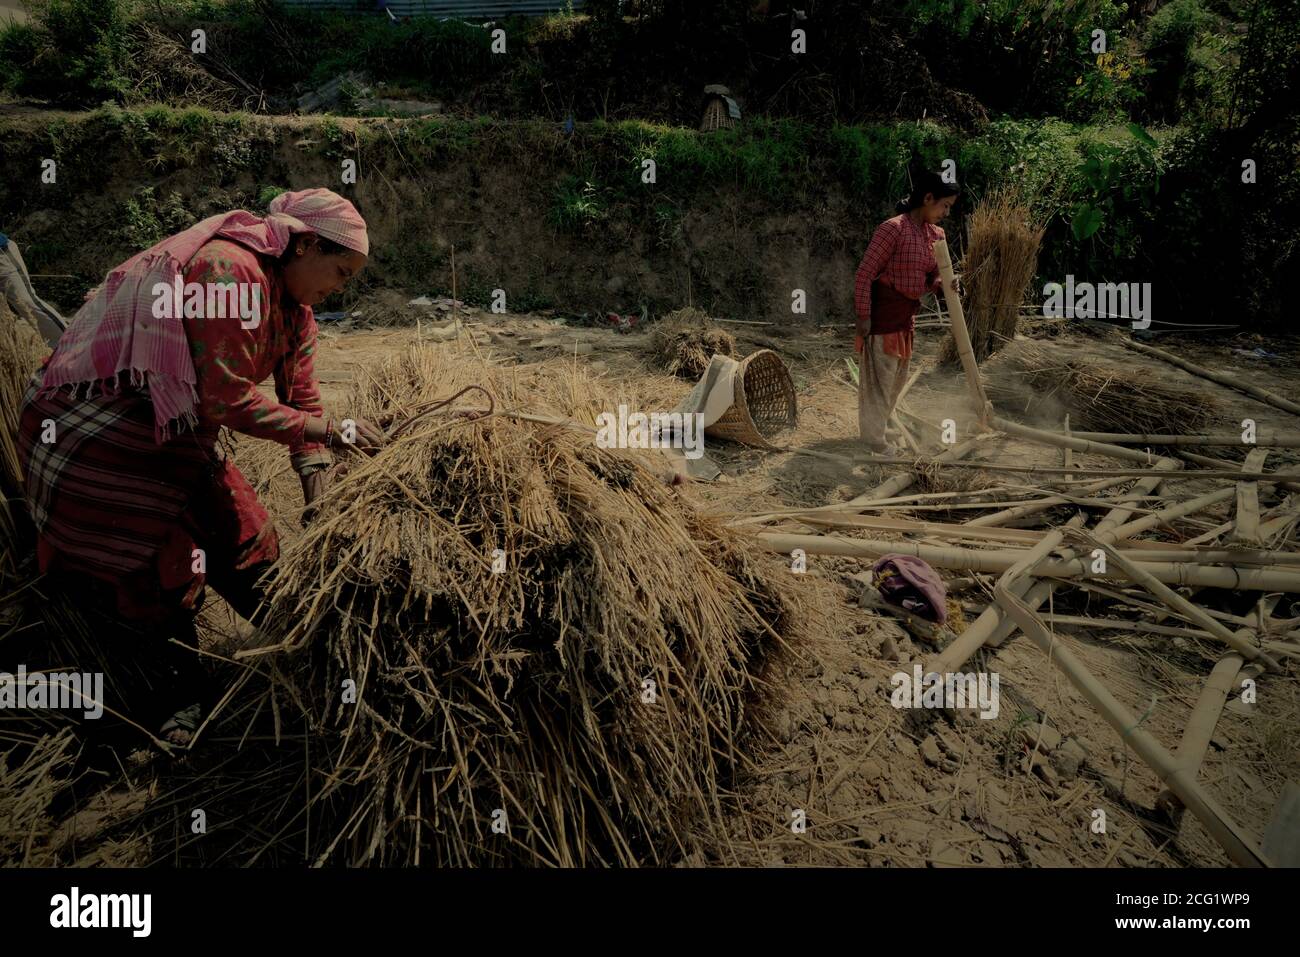 Las mujeres que recolectan bambú y wheatgrasses secos para diversos usos en una zona rural en las afueras de Bhaktapur, Bagmati Pradesh, Nepal. Foto de stock